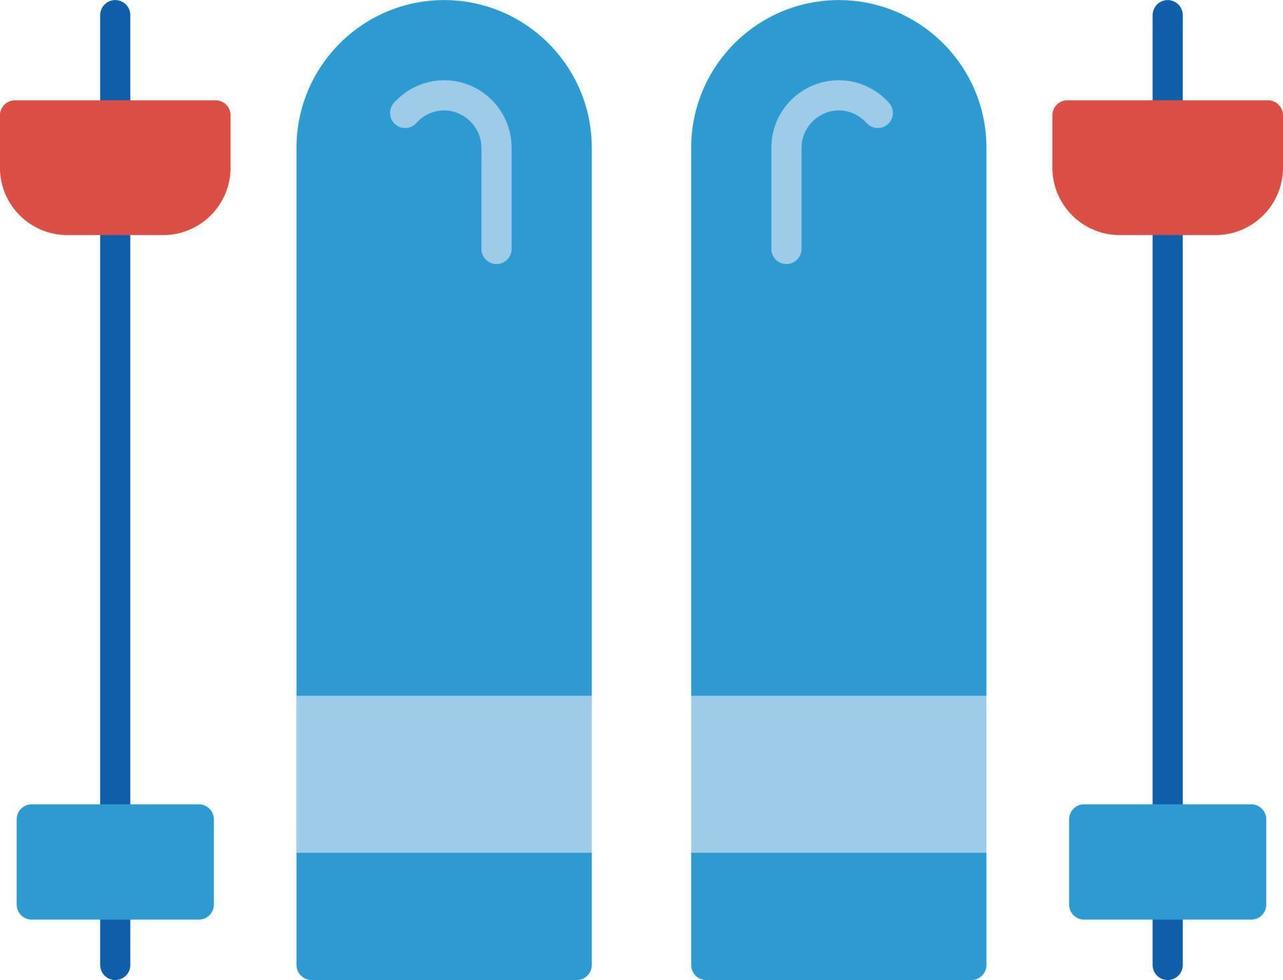 conception d'icônes créatives de skis vecteur